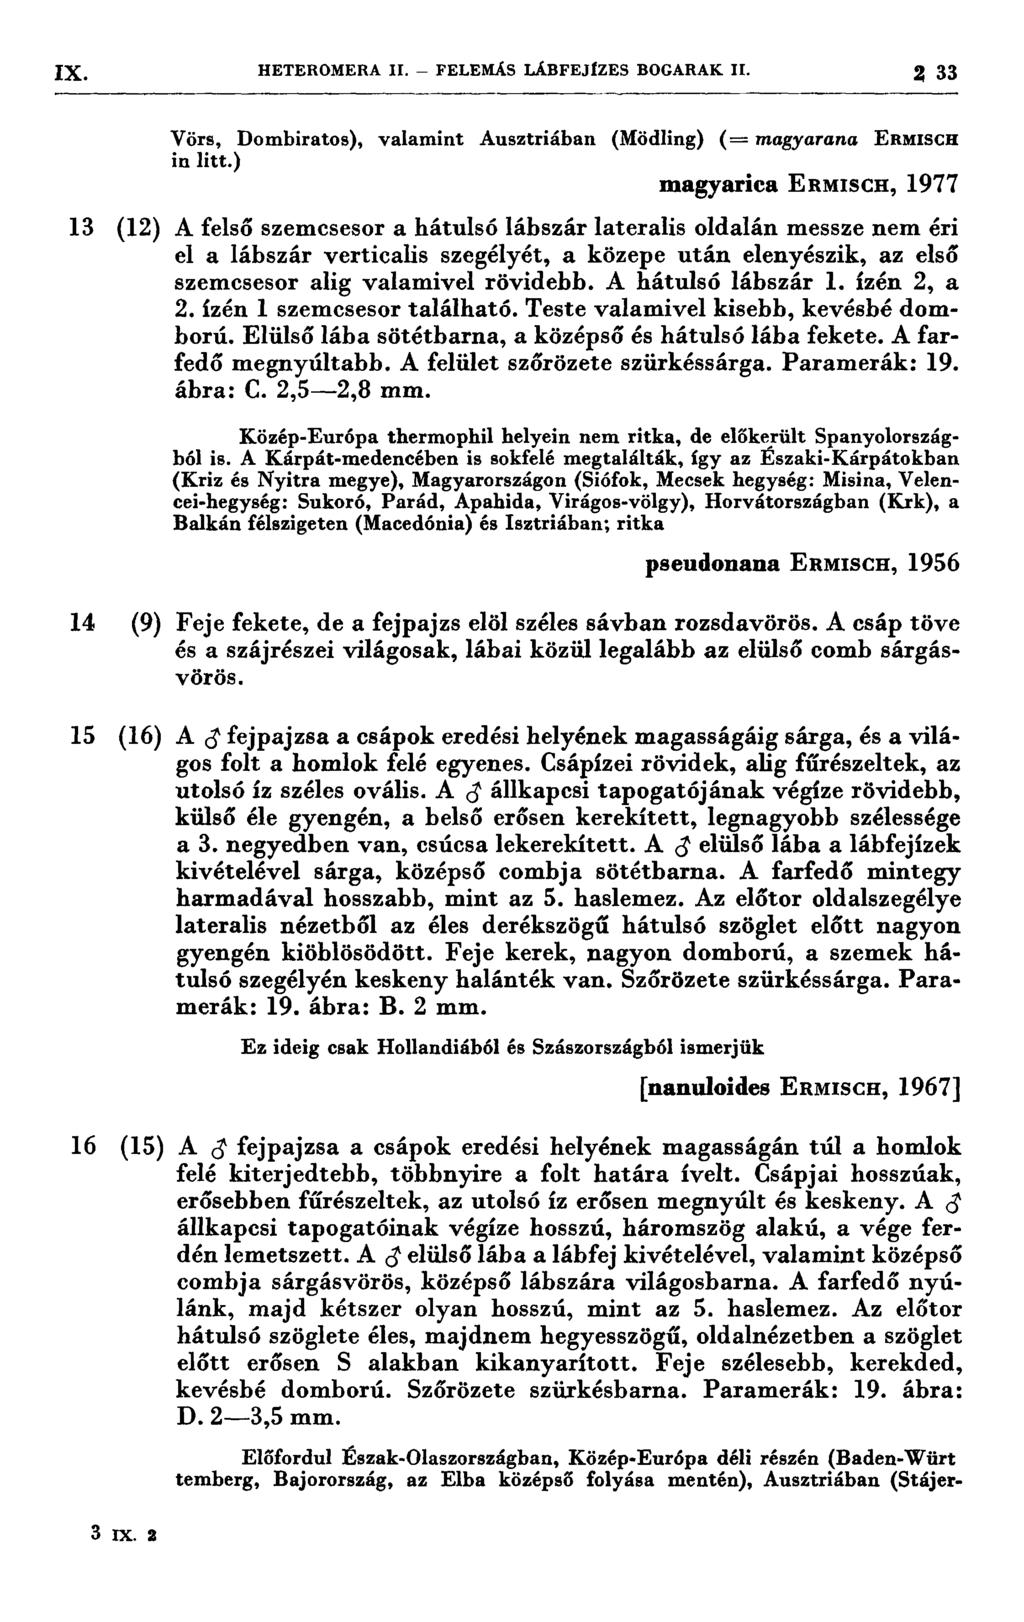 IX HETEROMERA II. - FELEMÁS LÁBFEJÍZES BOGARAK II. 2 33, 4 7 77 7 7 7-77777 7777 77 7 77 7 77 ı Vörs, Dombiratos), valamint Ausztriában (Mödling) (= magyarana ERMISCH in litt.